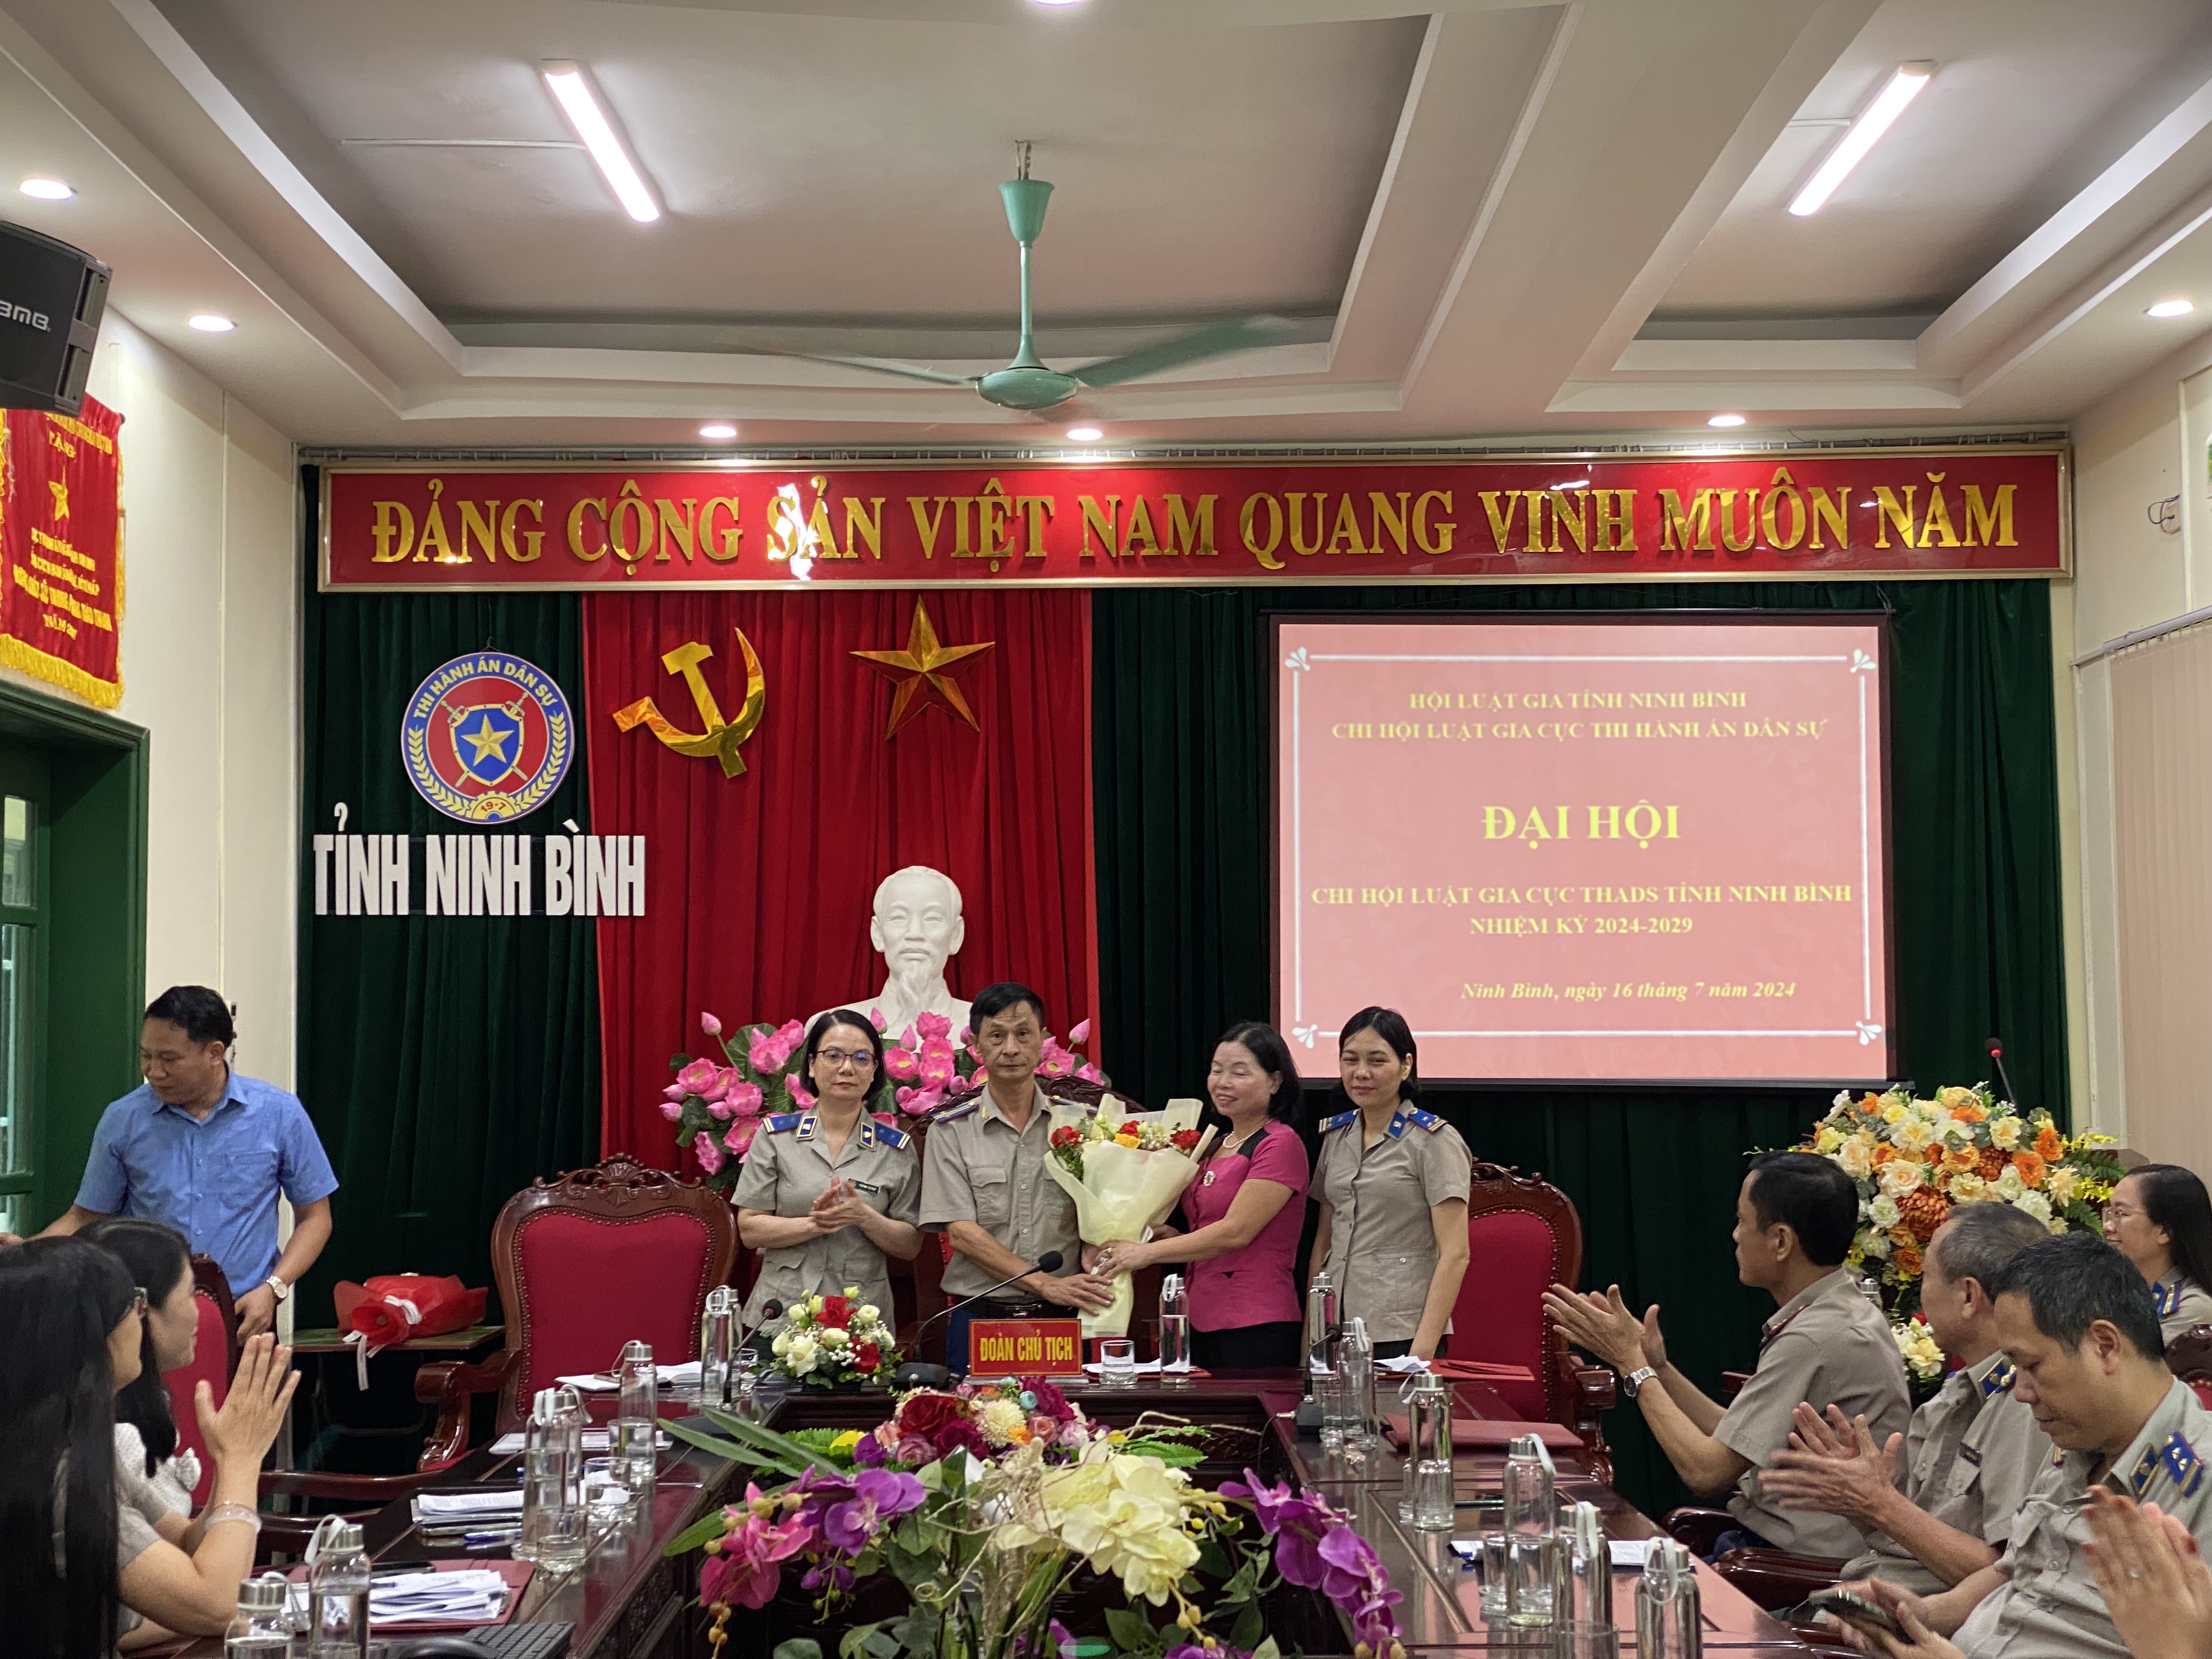 Đại hội Chi hội Luật Gia Cục Thi hành án dân sự tỉnh Ninh Bình 3